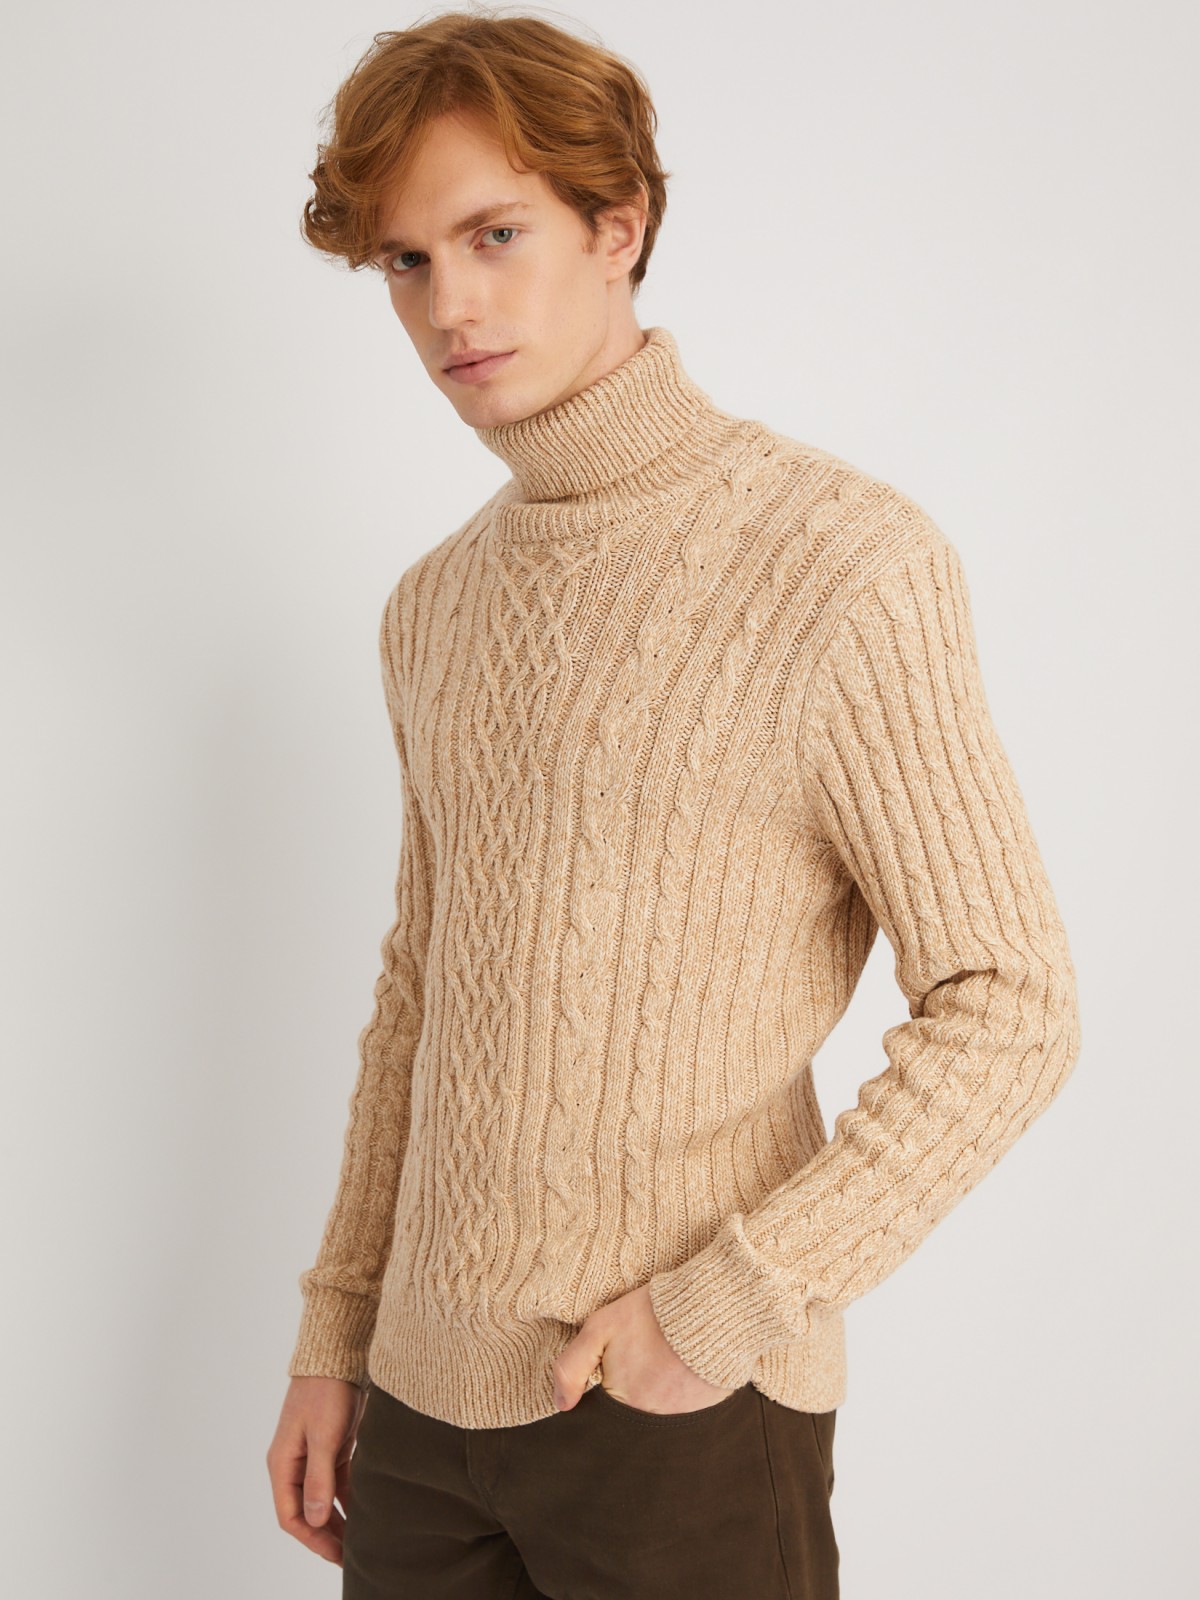 Вязаный свитер с фактурным узором косы zolla 013446165093, цвет коричневый, размер S - фото 5